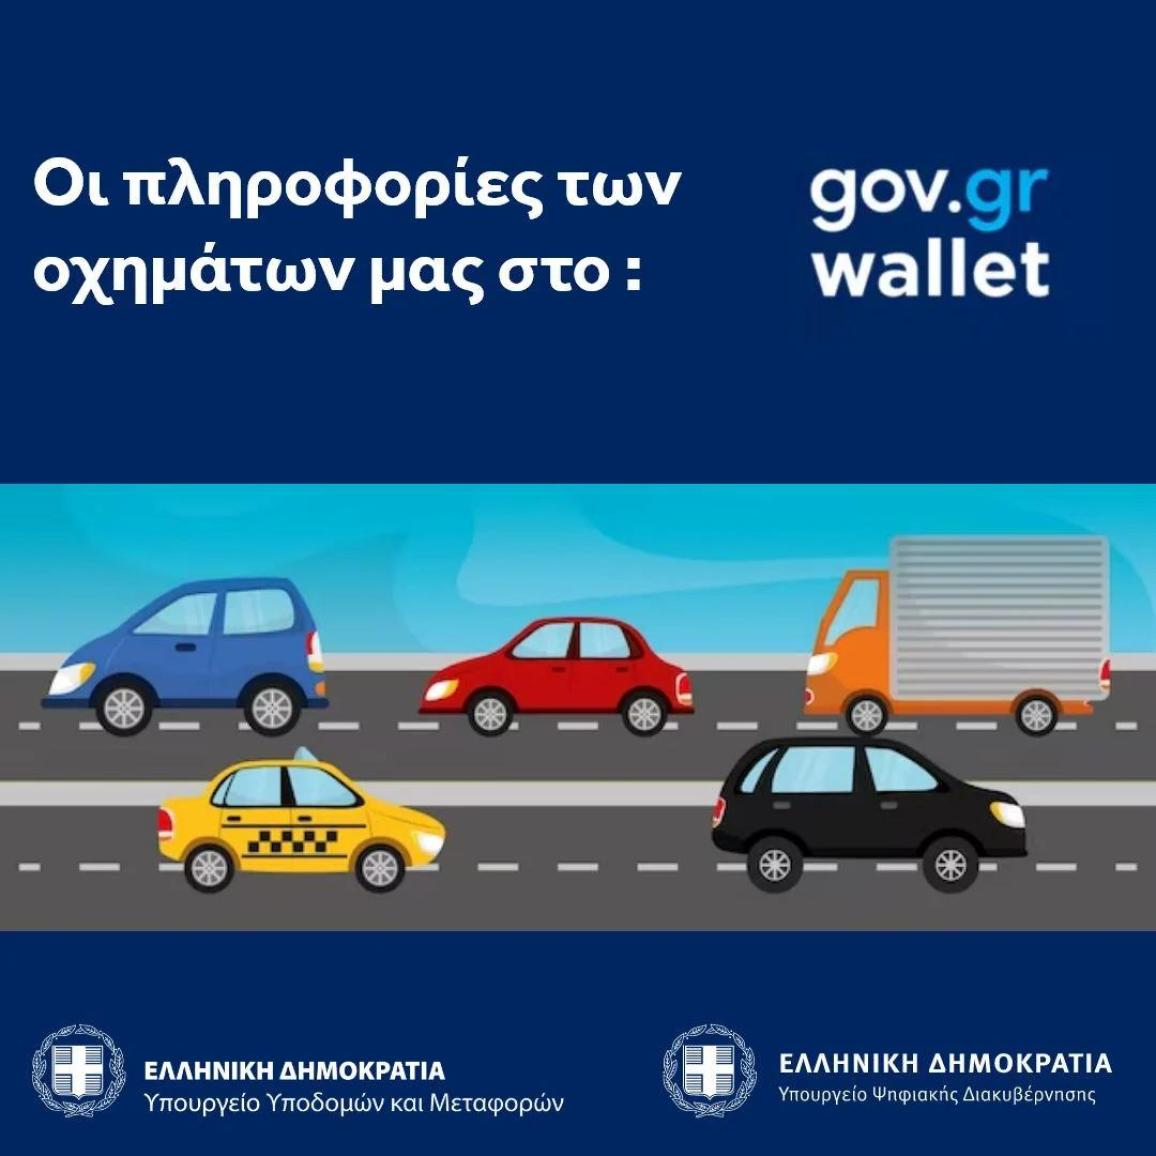 Gov.gr Wallet - Μέσω του MyAuto οι πληροφορίες των οχημάτων μας